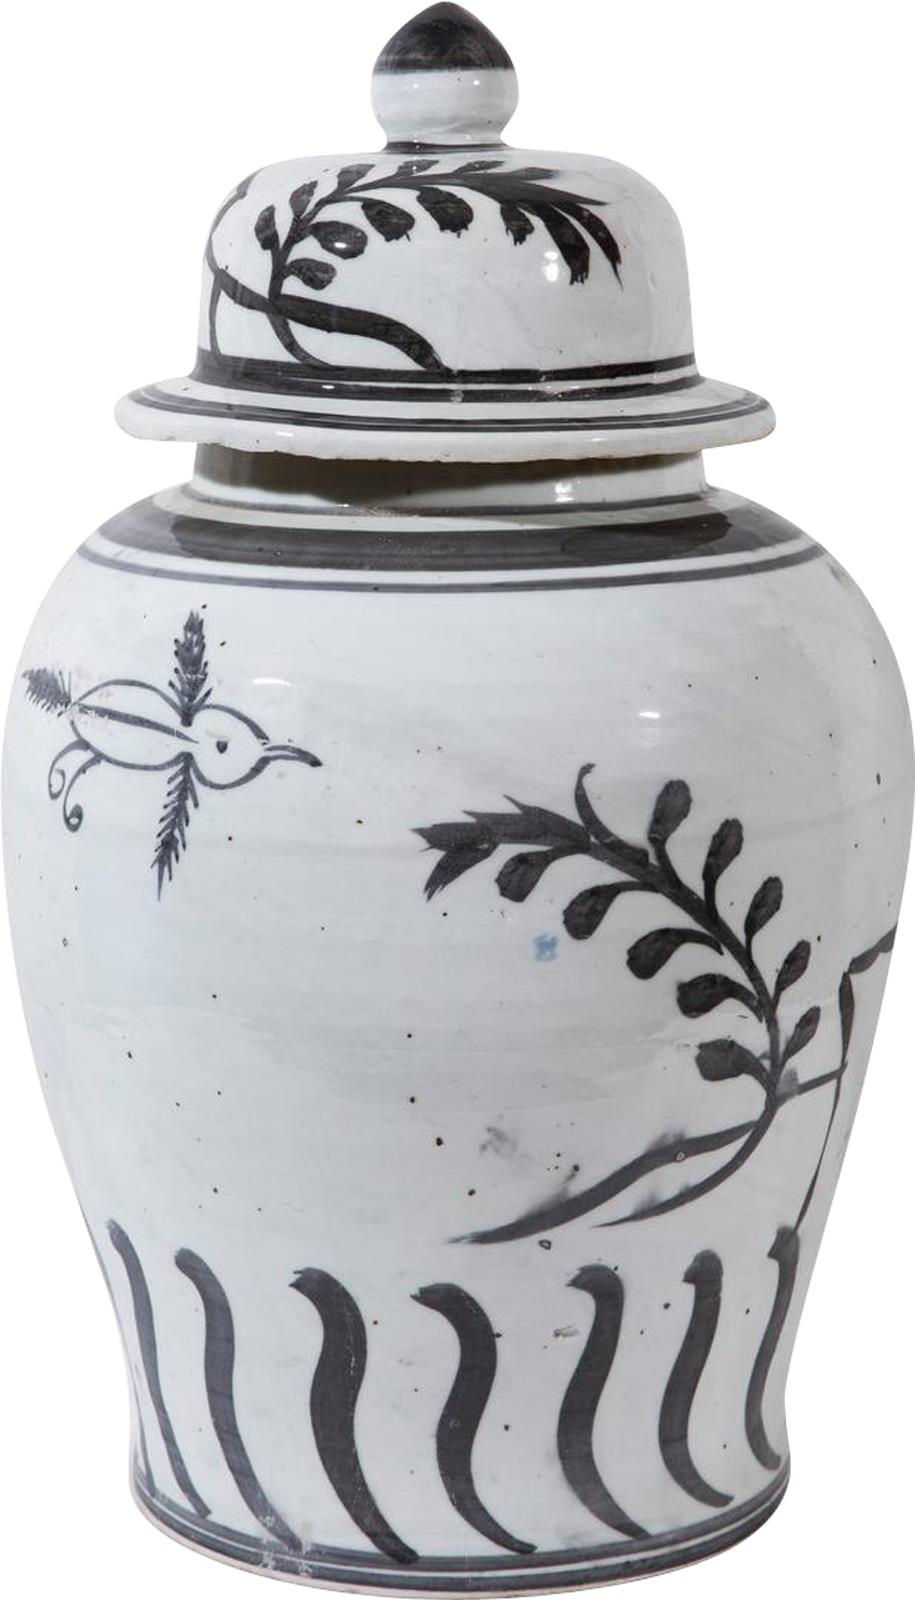 Temple Jar Vase Flying Bird Black Vintage White Crackle Ceramic Han-Image 1